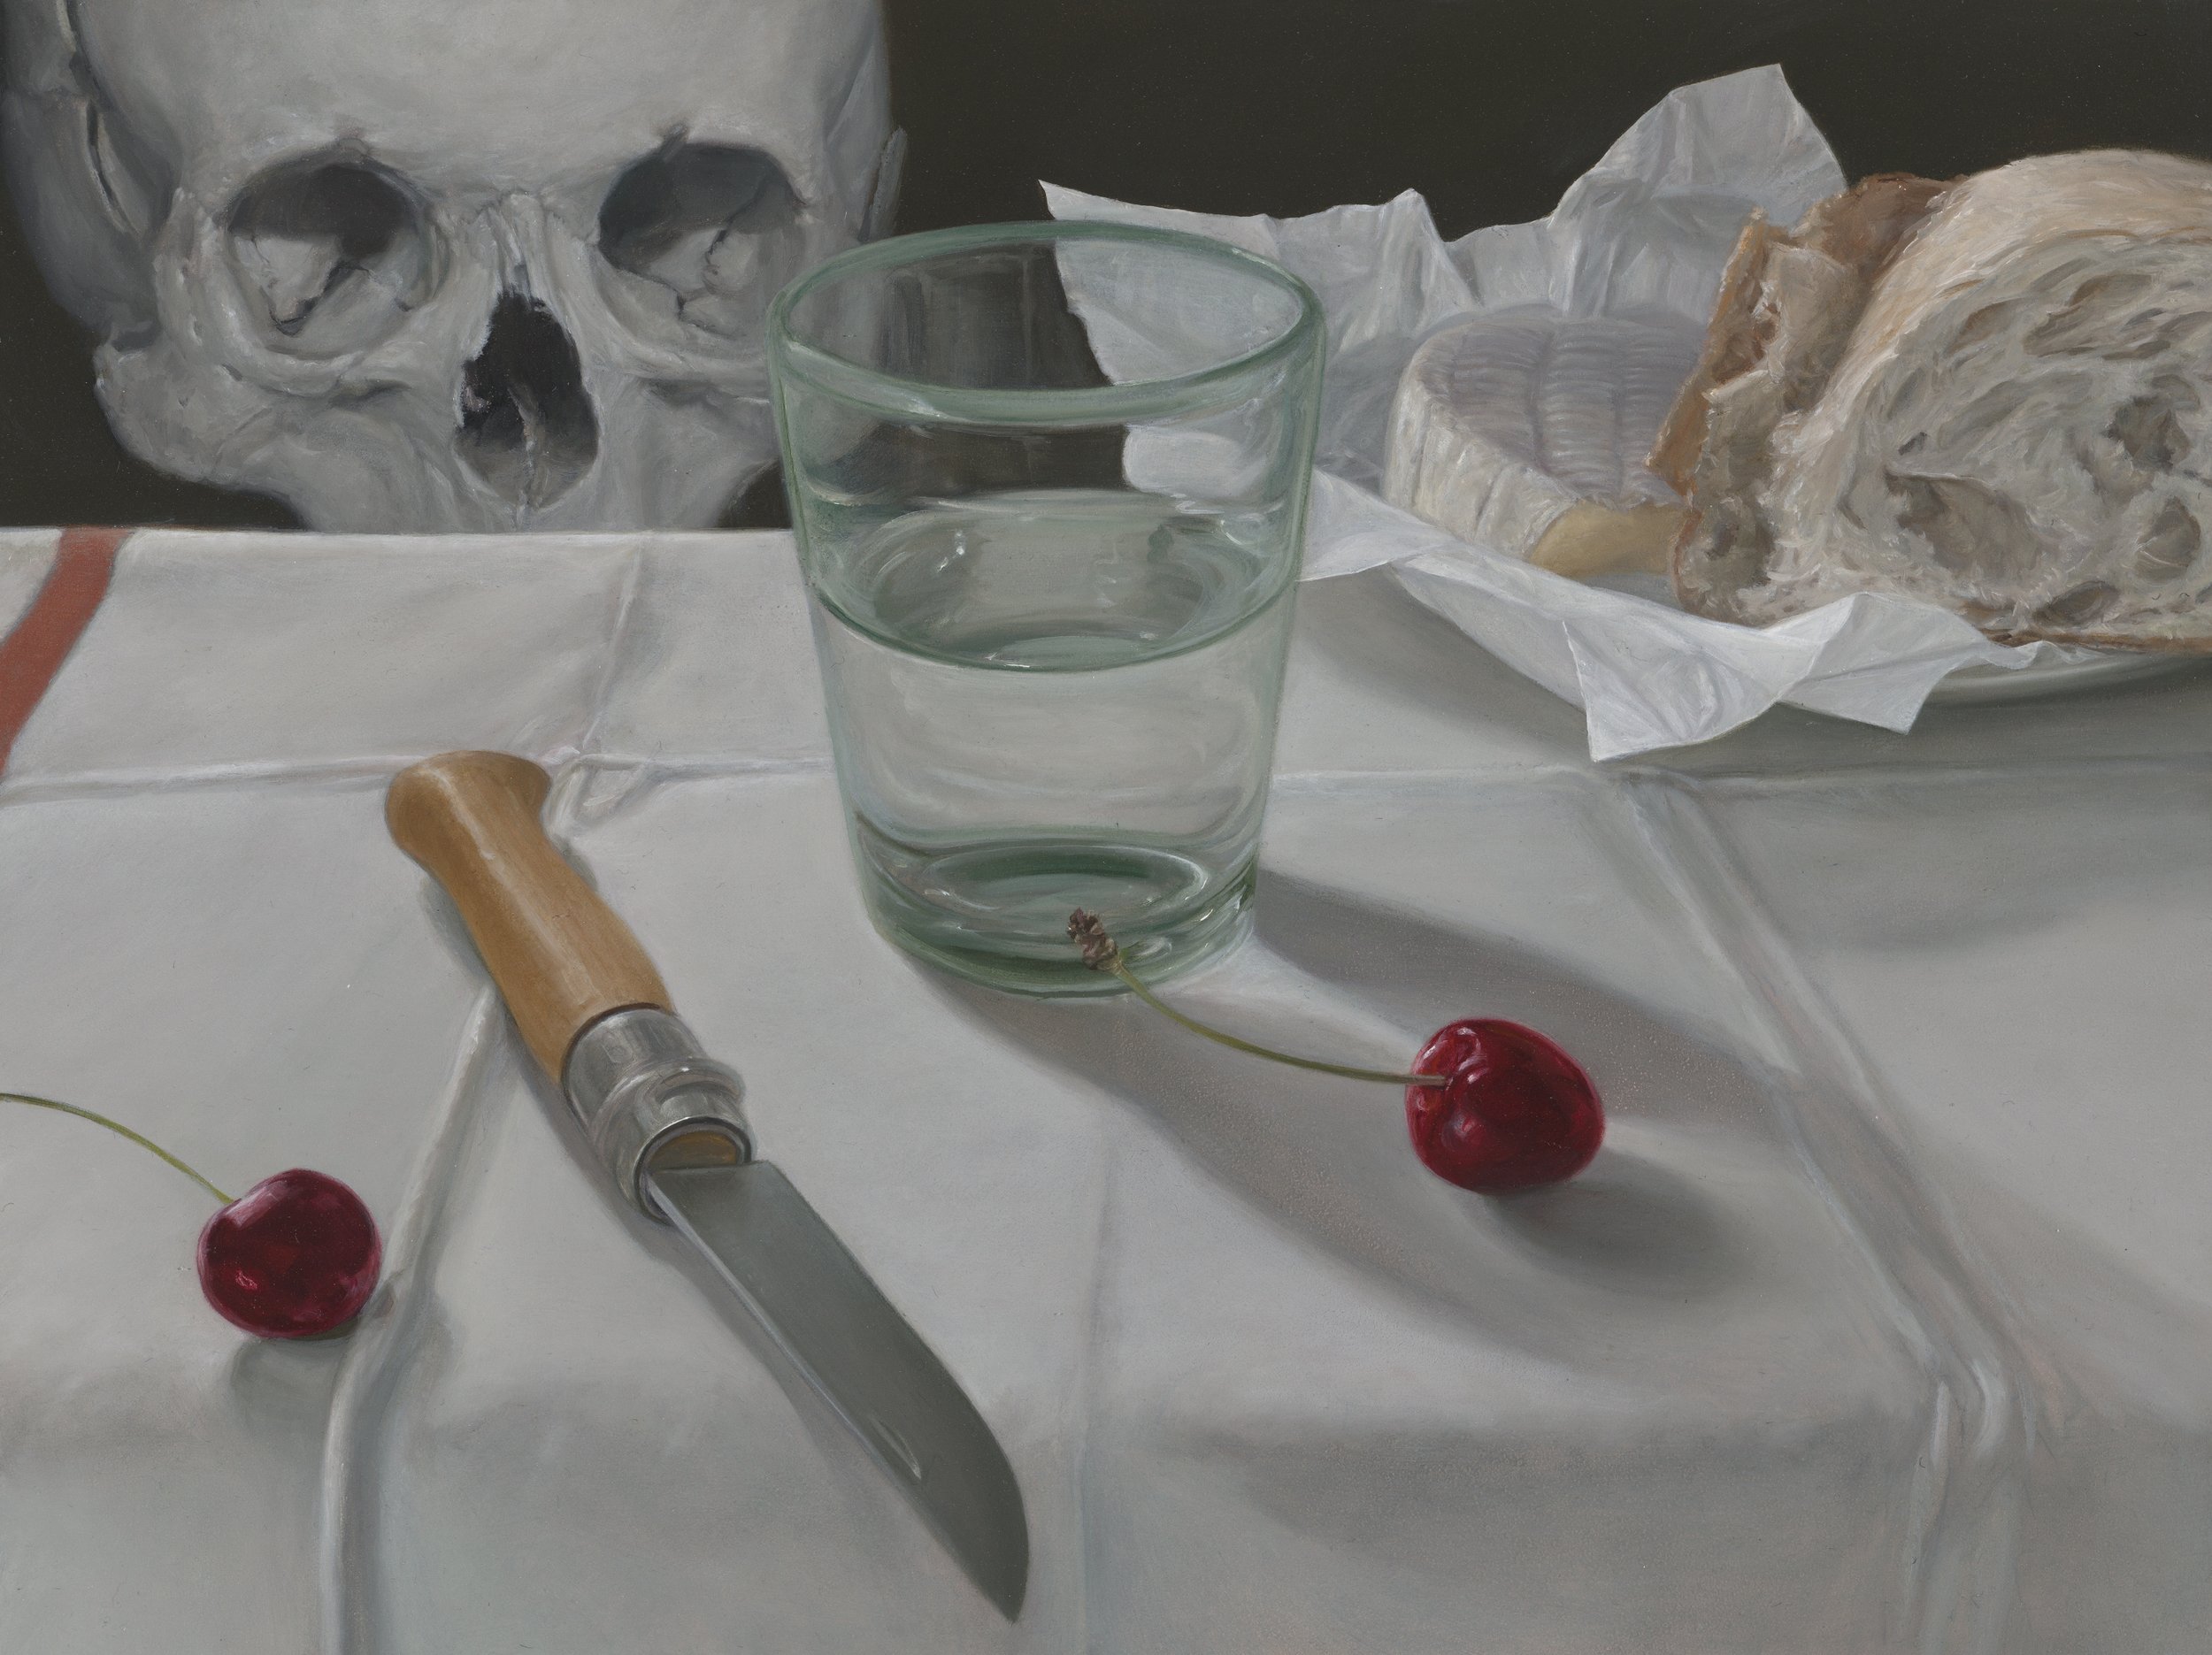  Skull, Glass, Cherries, Knife  Oil on gessobord, 2022  31cm x 23cm  Photo:   Matthew Stanton     